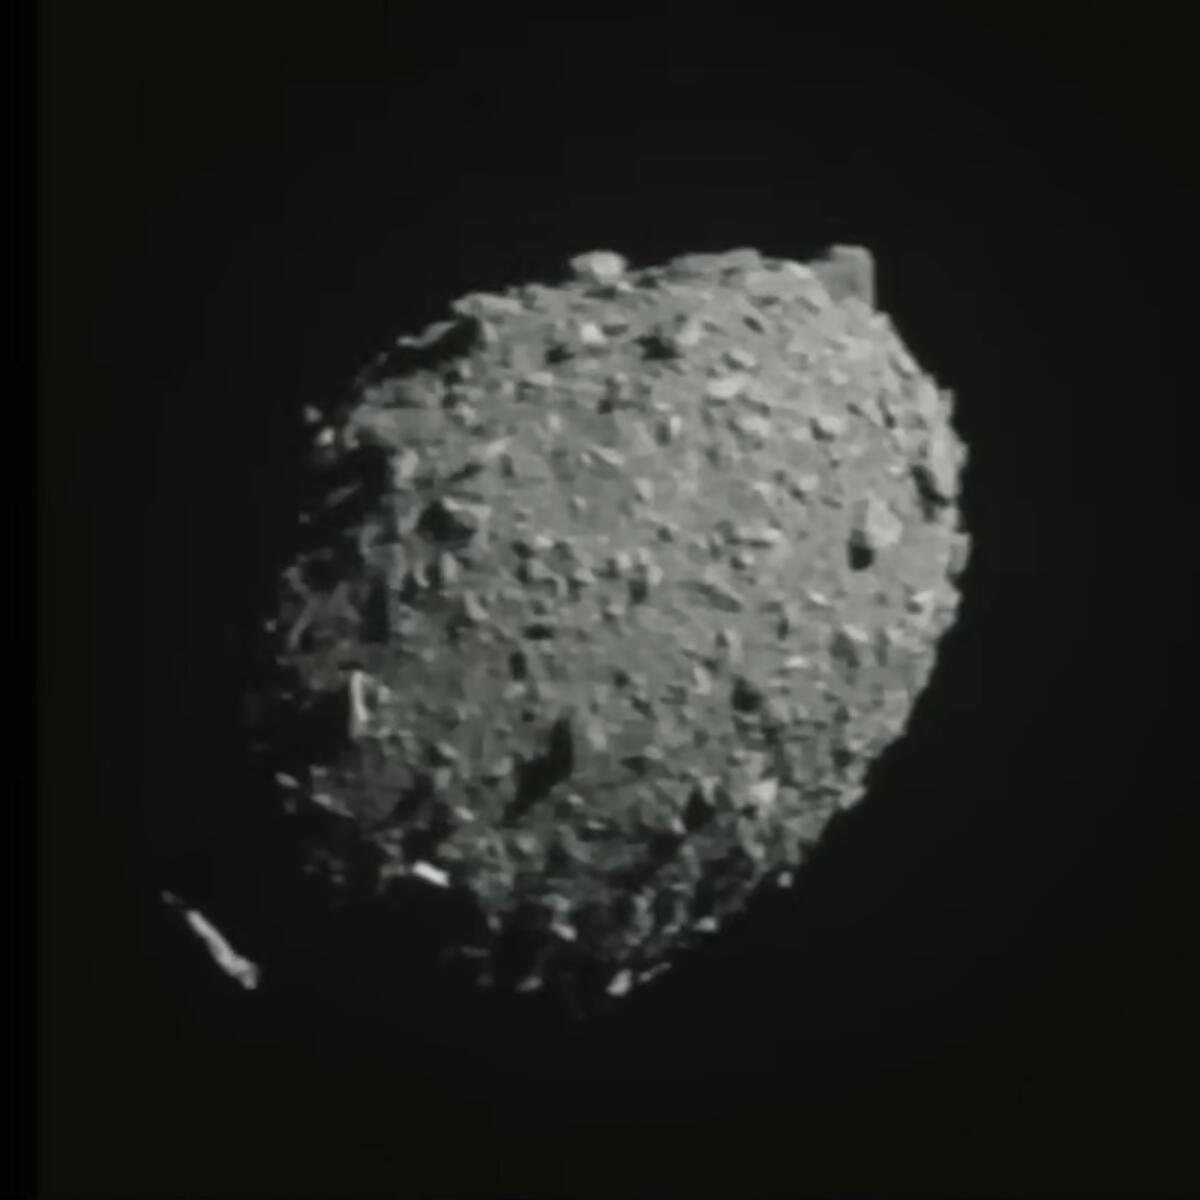 Asteroid Dimorphos is seen as the spacecraft flies toward it.